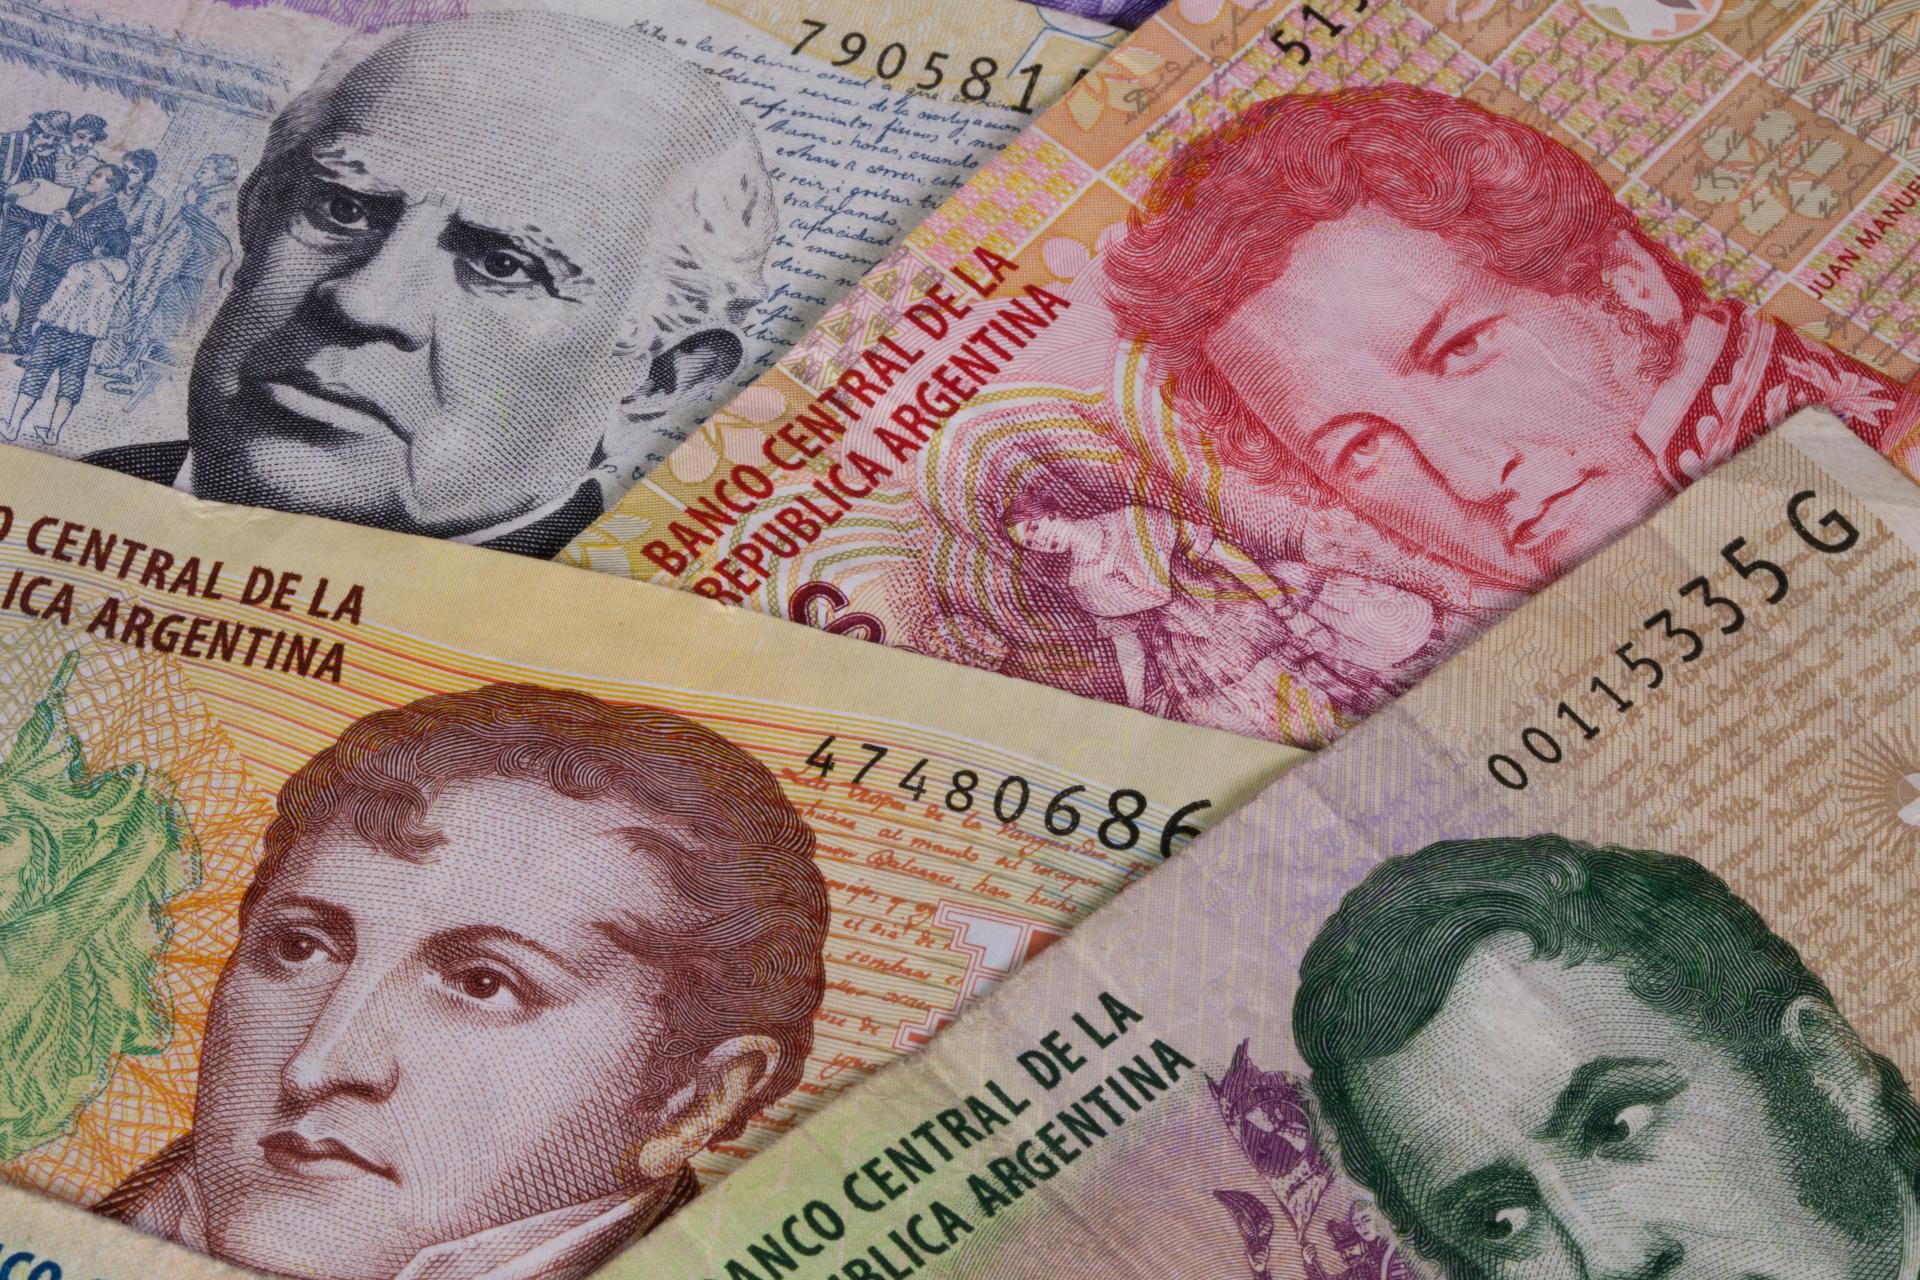 Argentina zavádí kvůli vysoké inflaci bankovku v hodnotě 10.000 pesos